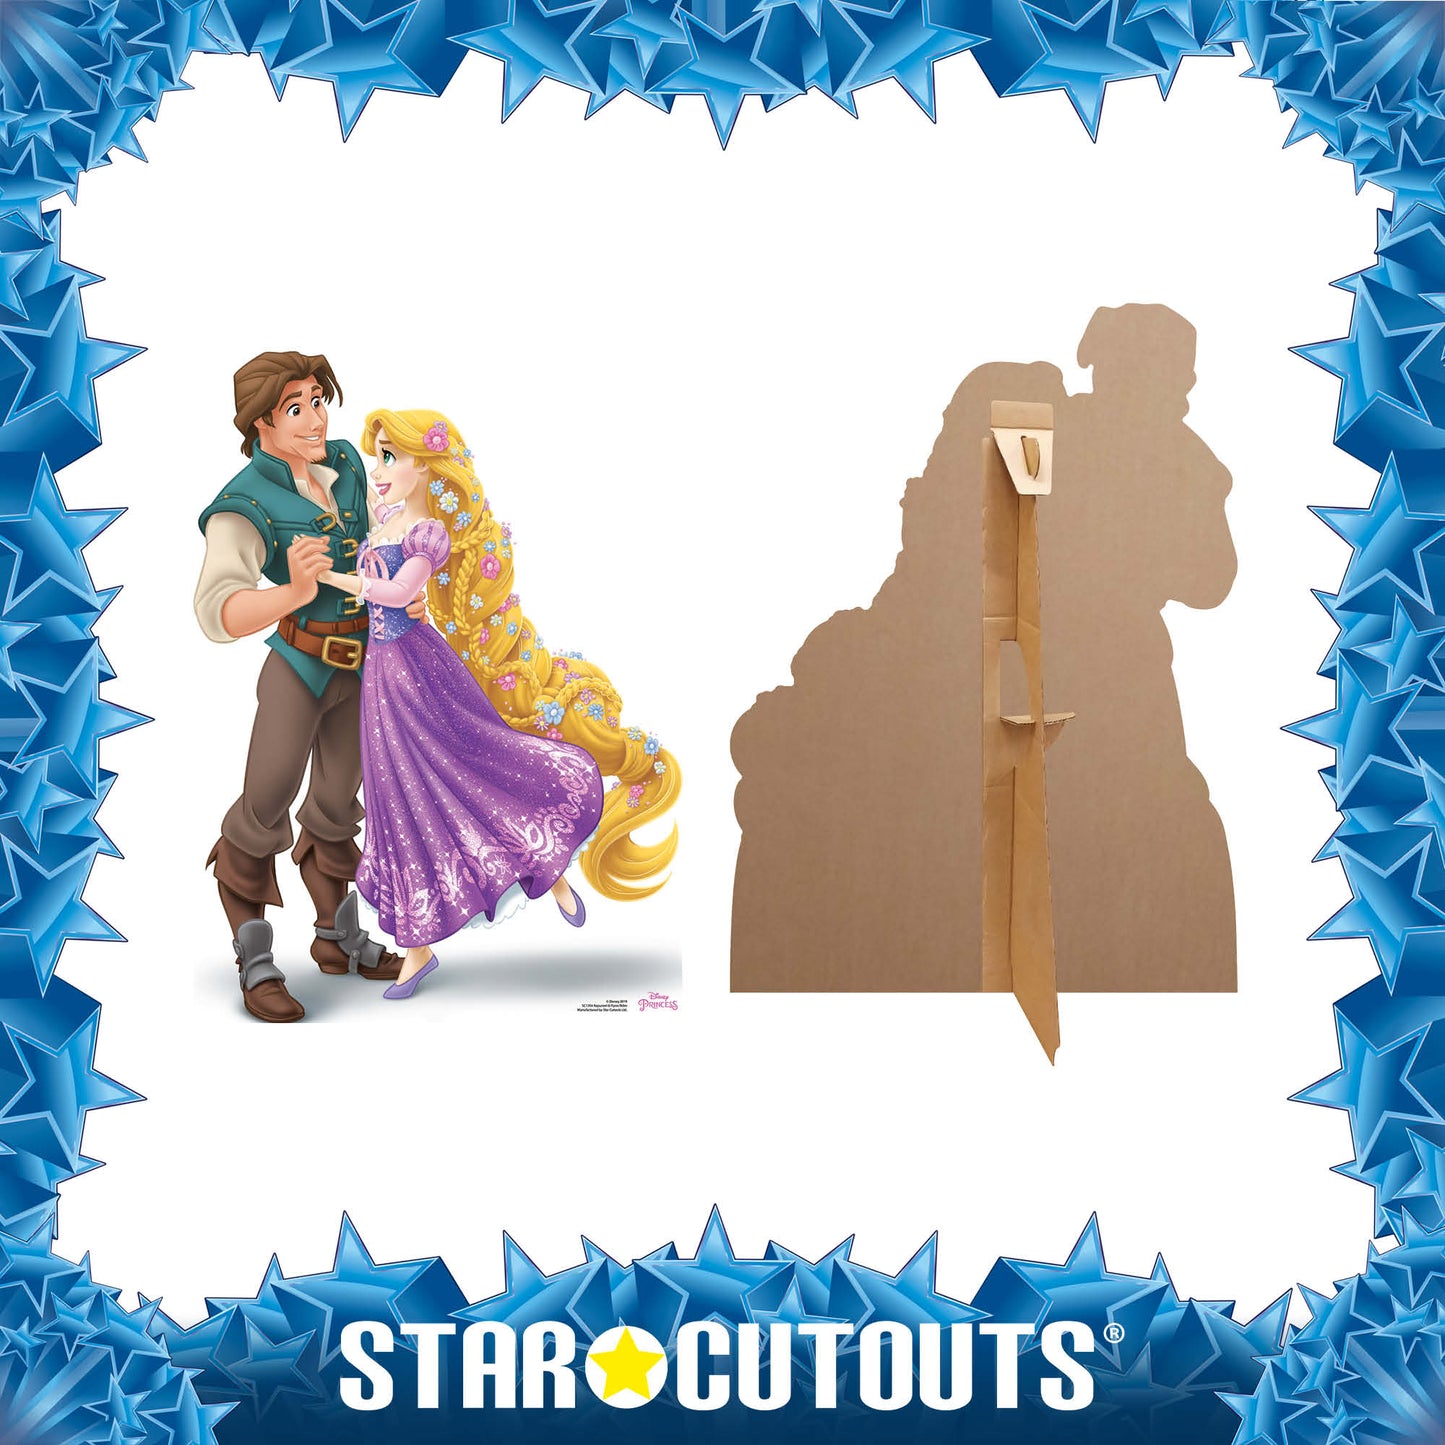 Disney Princess Rapunzel and Prince Flynn Rider  Cardboard Cutout